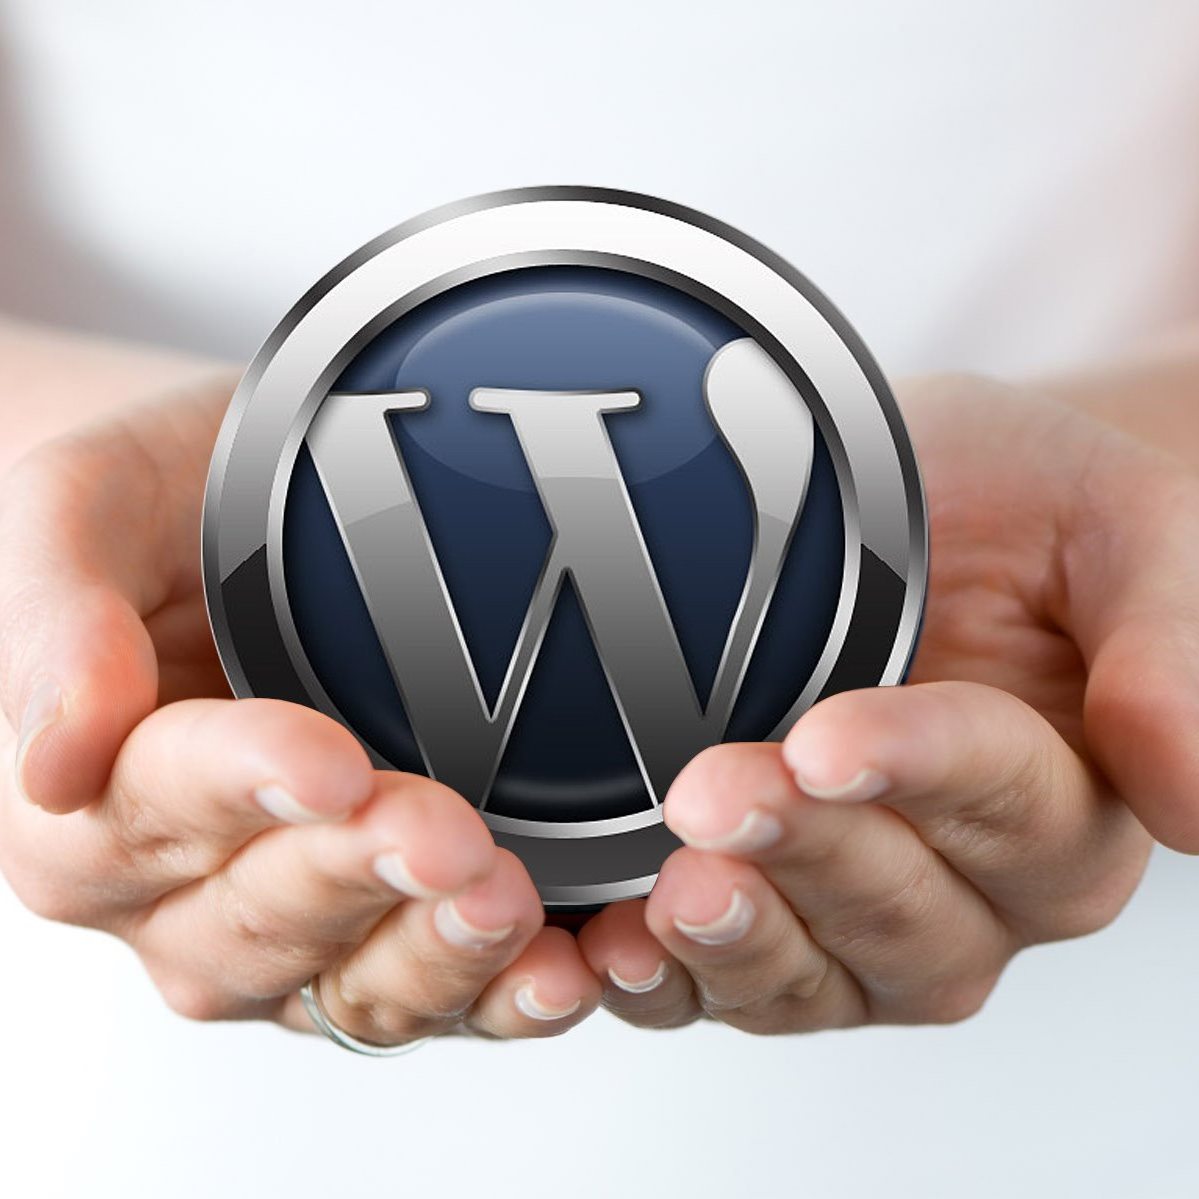 Websites Designed in WordPress